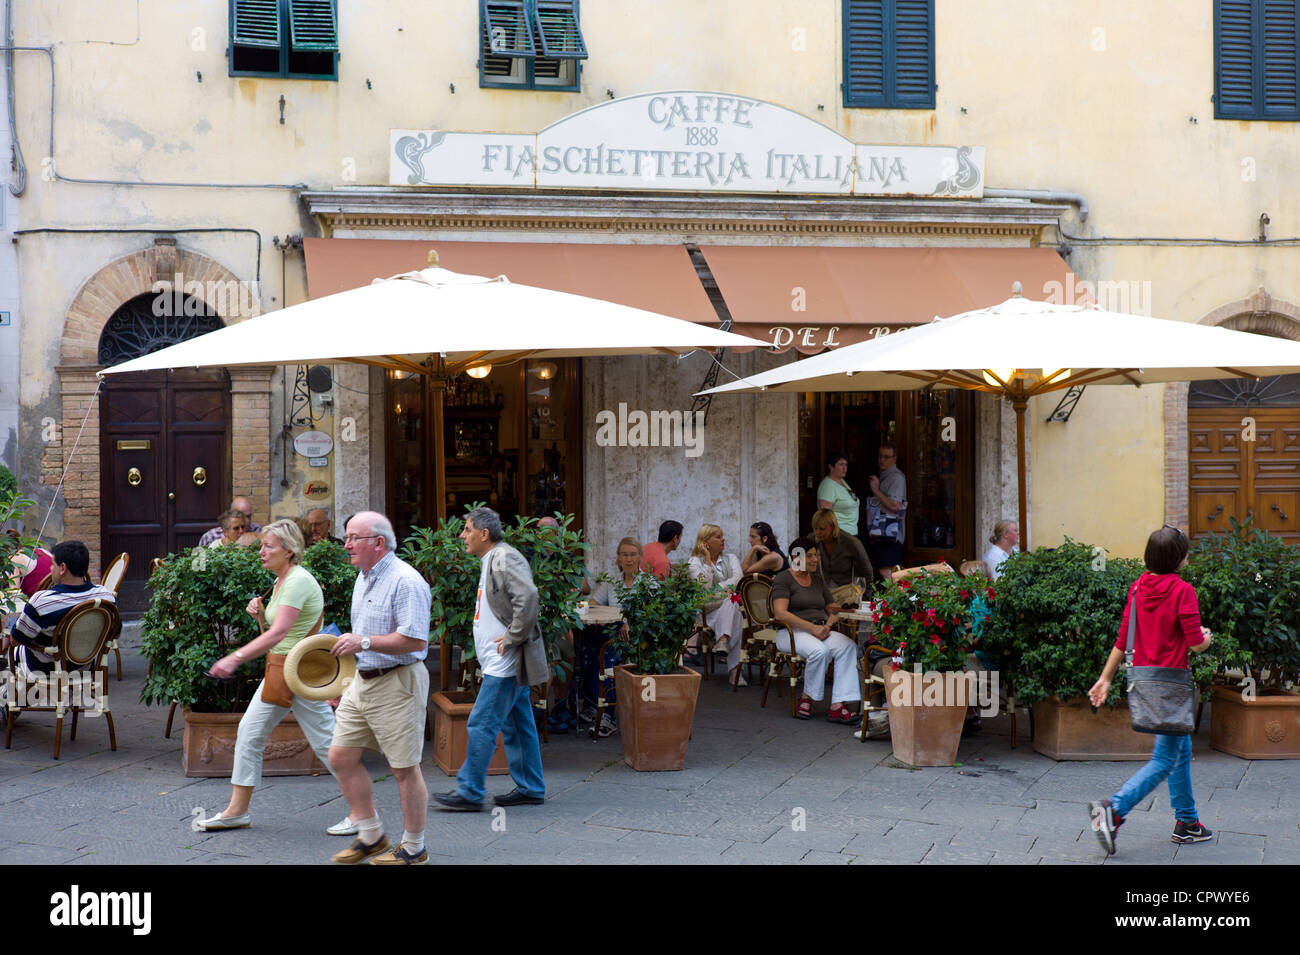 I turisti potrete cenare presso il ristorante bar caffe 1888 Fiaschetteria Italiana in Piazza del Popolo, Montalcino, Val d'Orcia,Toscana, Italia Foto Stock